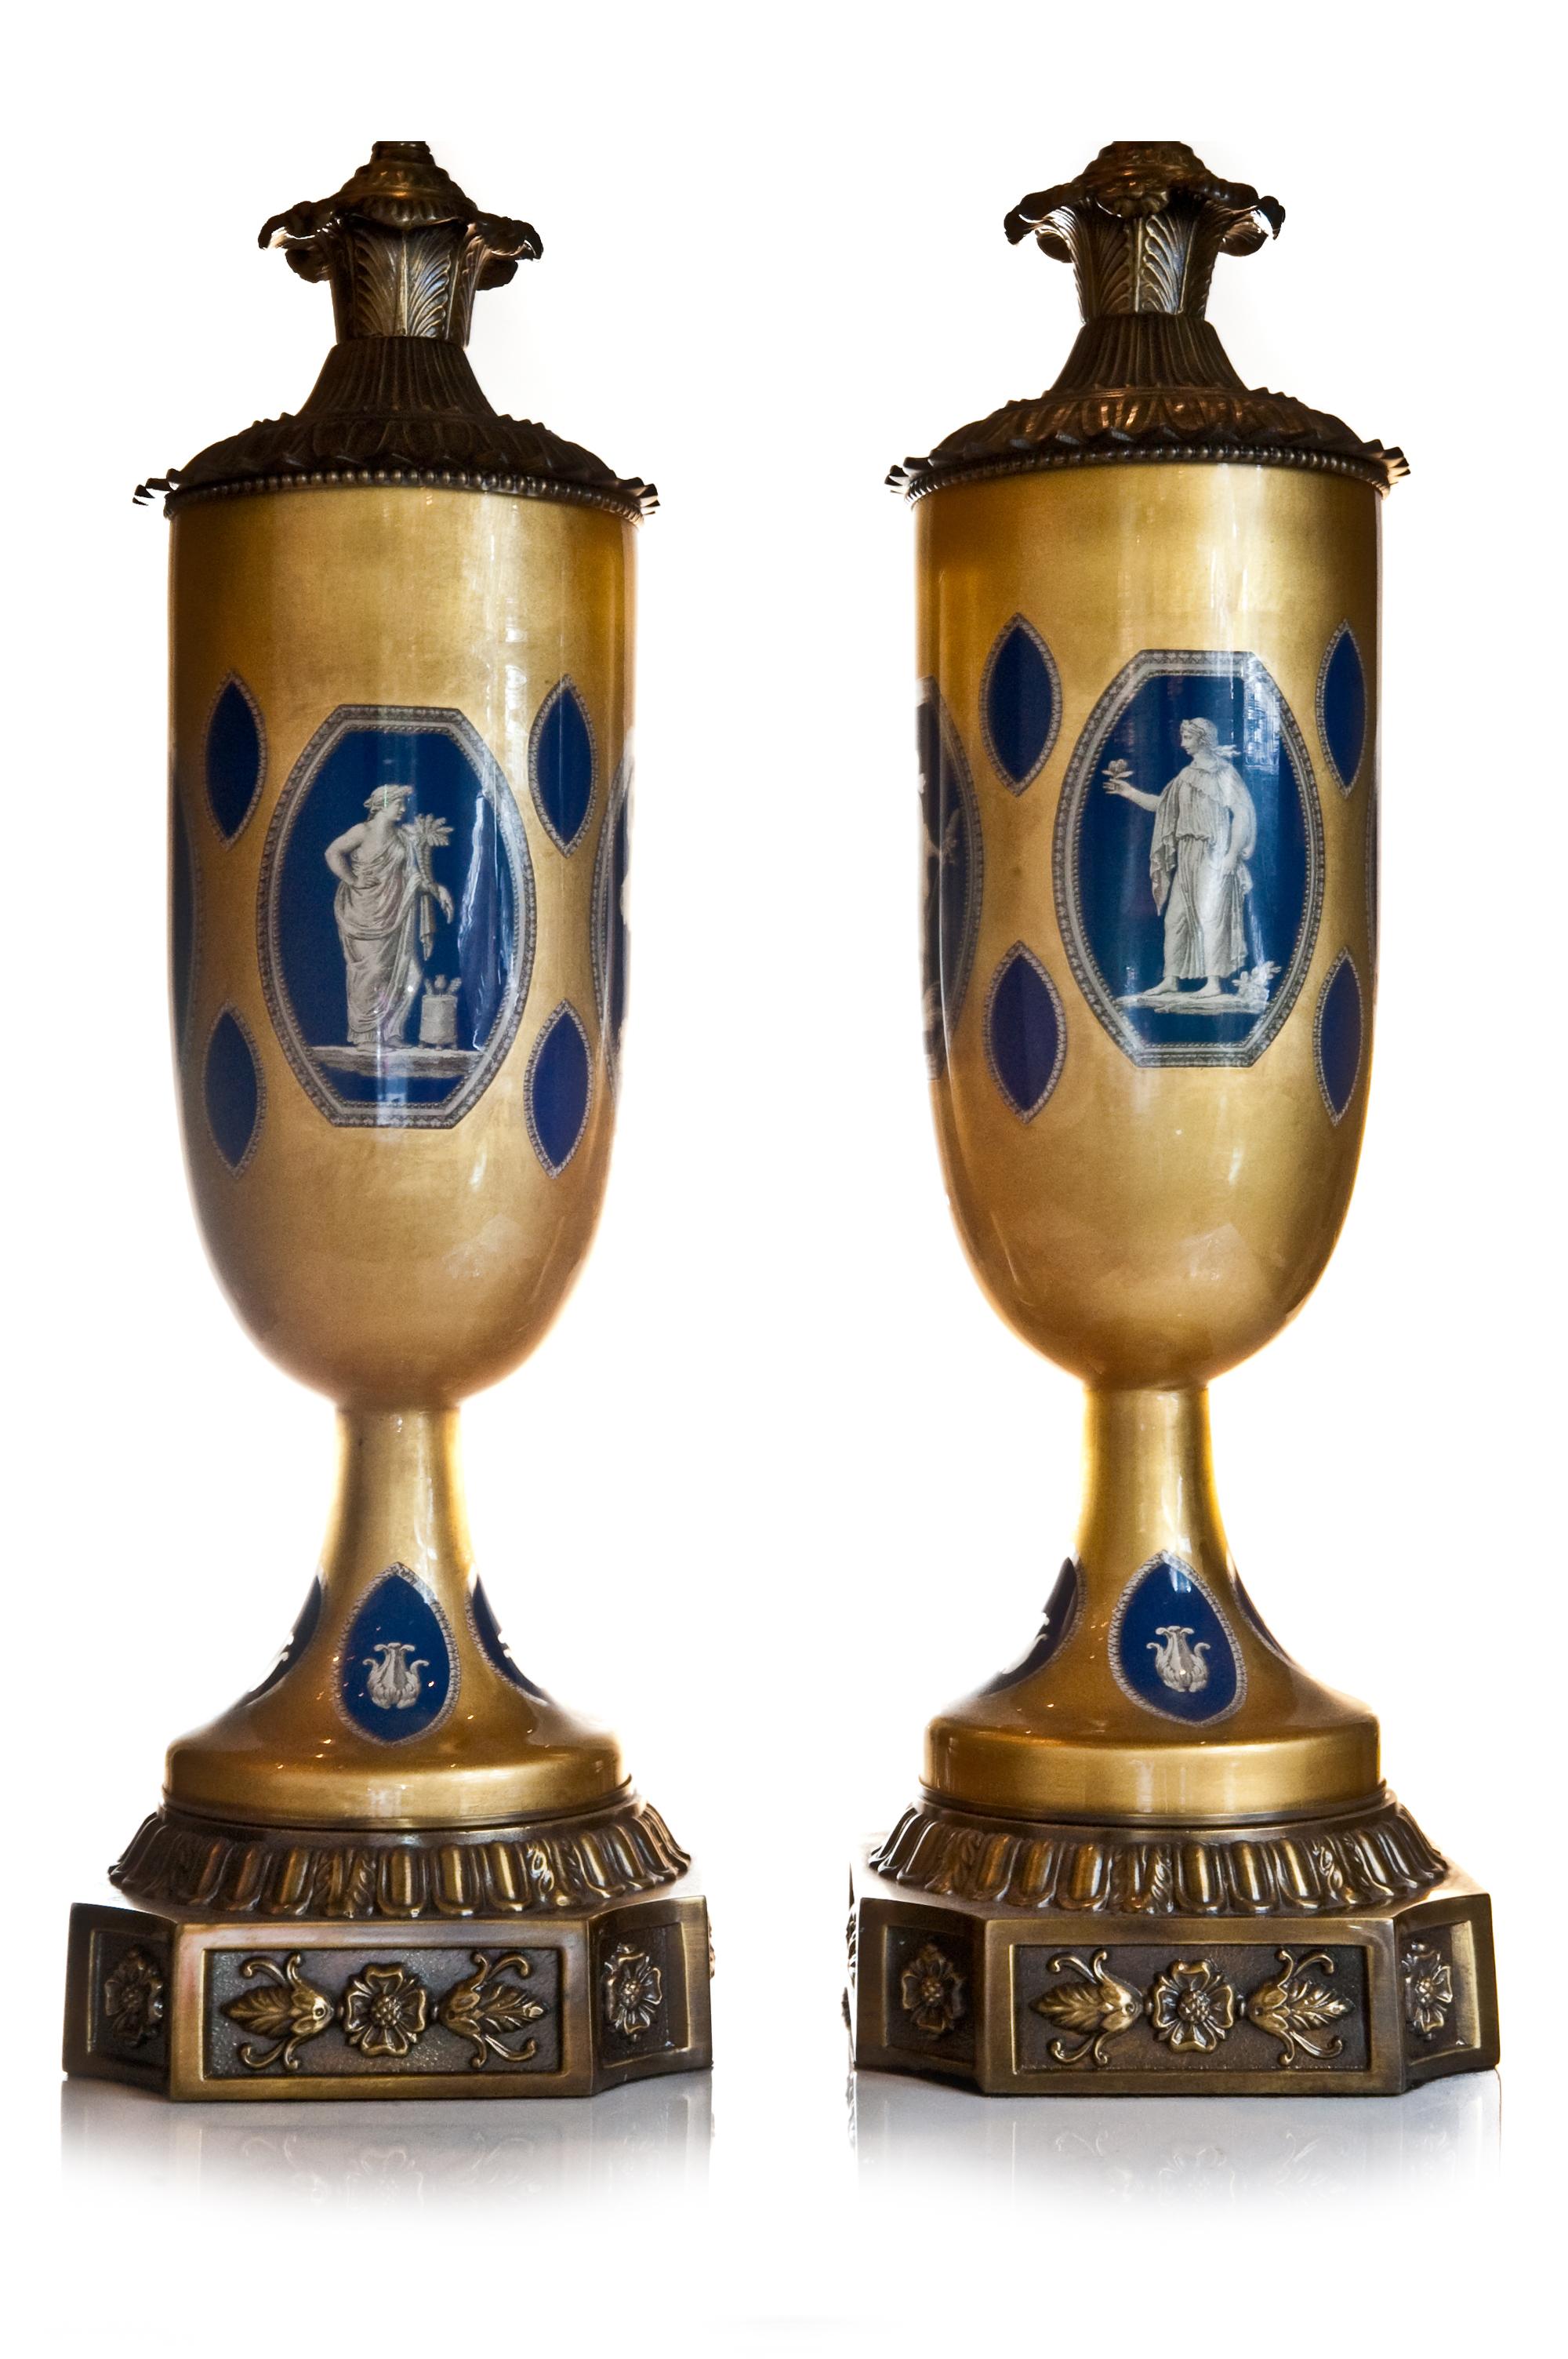 Paire de lampes de style Empire néoclassique français, montées sur un églomisé en bronze bleu lapis et doré, peintes et émaillées à la main. Chaque lampe unique est ornée de scènes figuratives et d'instruments de musique.